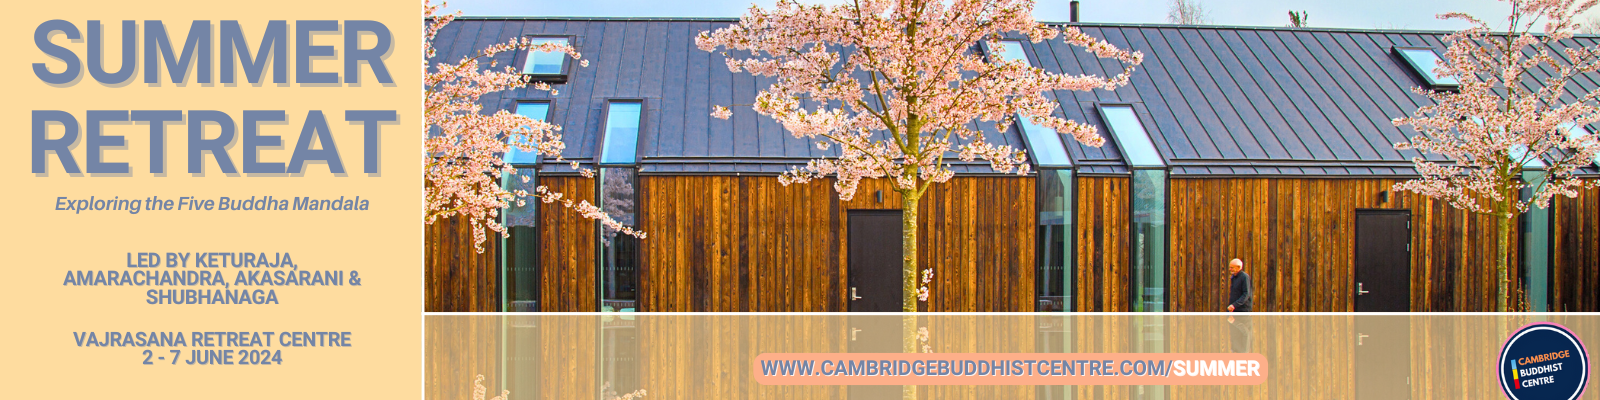 Cambridge Buddhist Centre